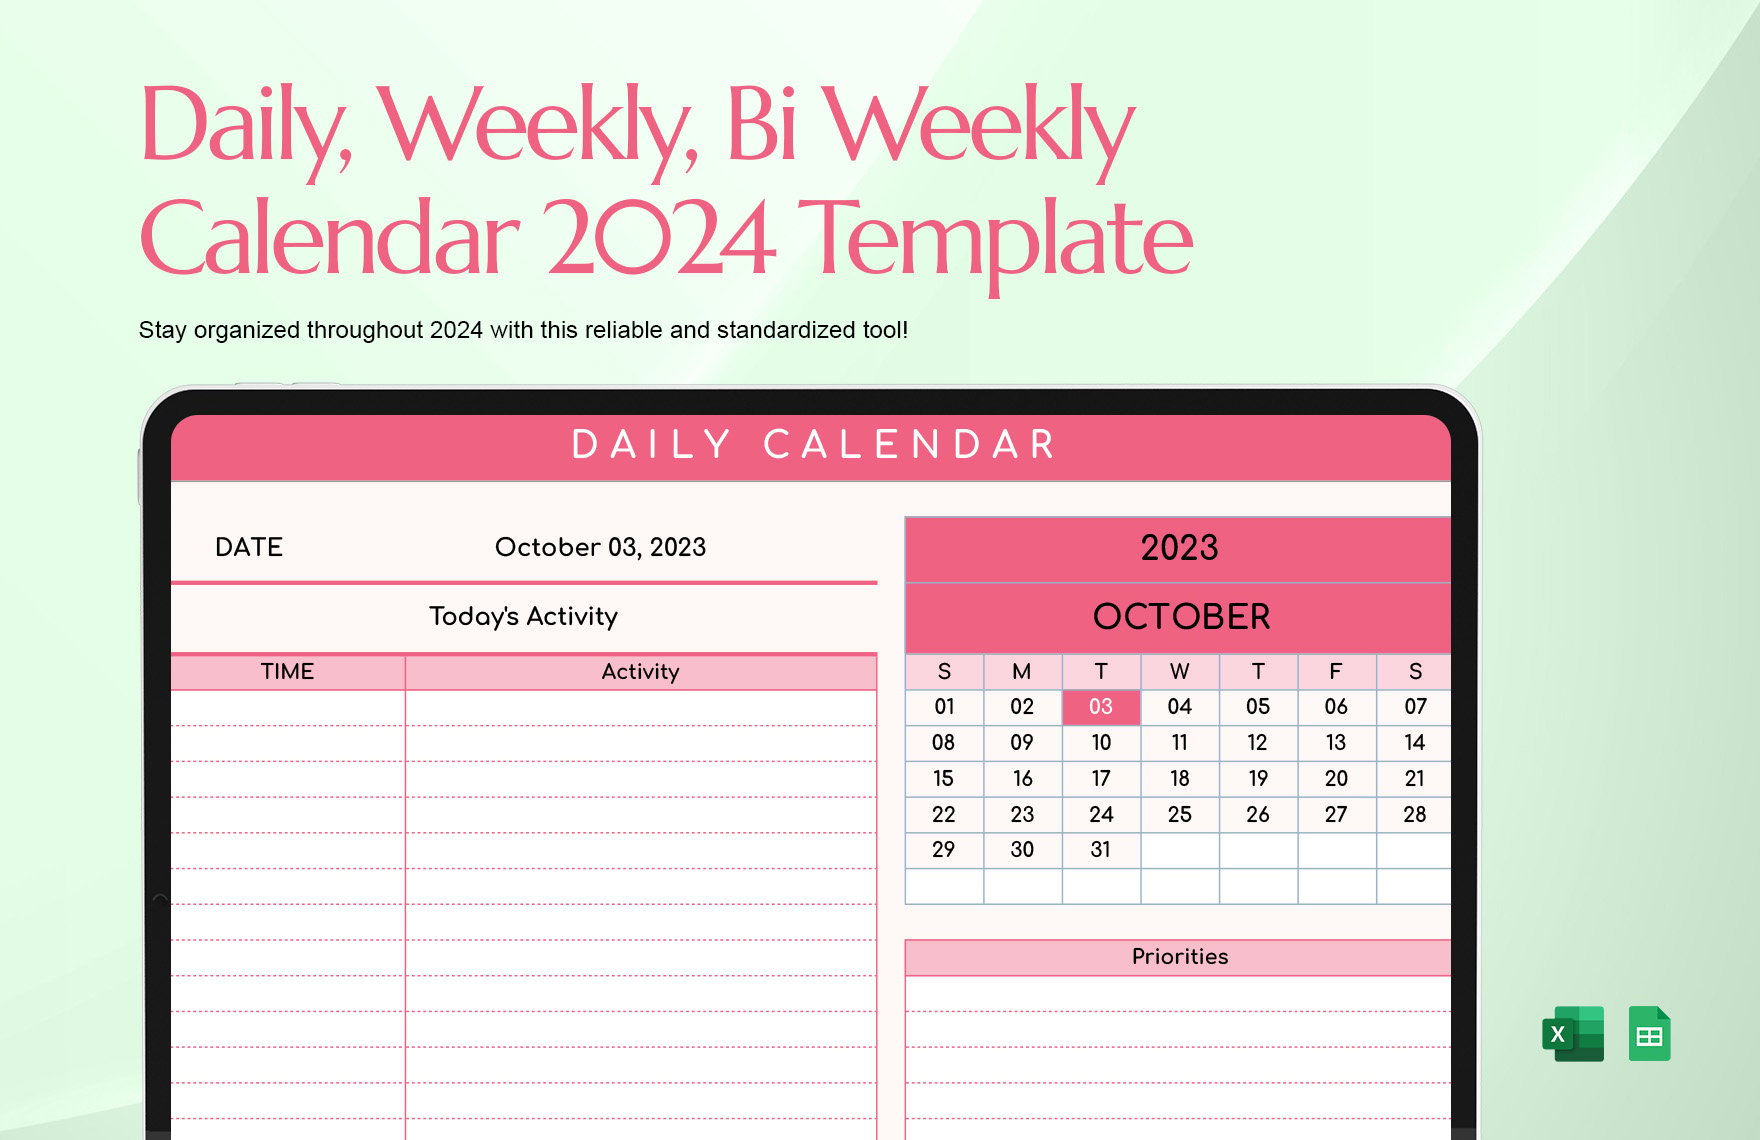 Daily, Weekly, Bi Weekly Calendar 2024 Template